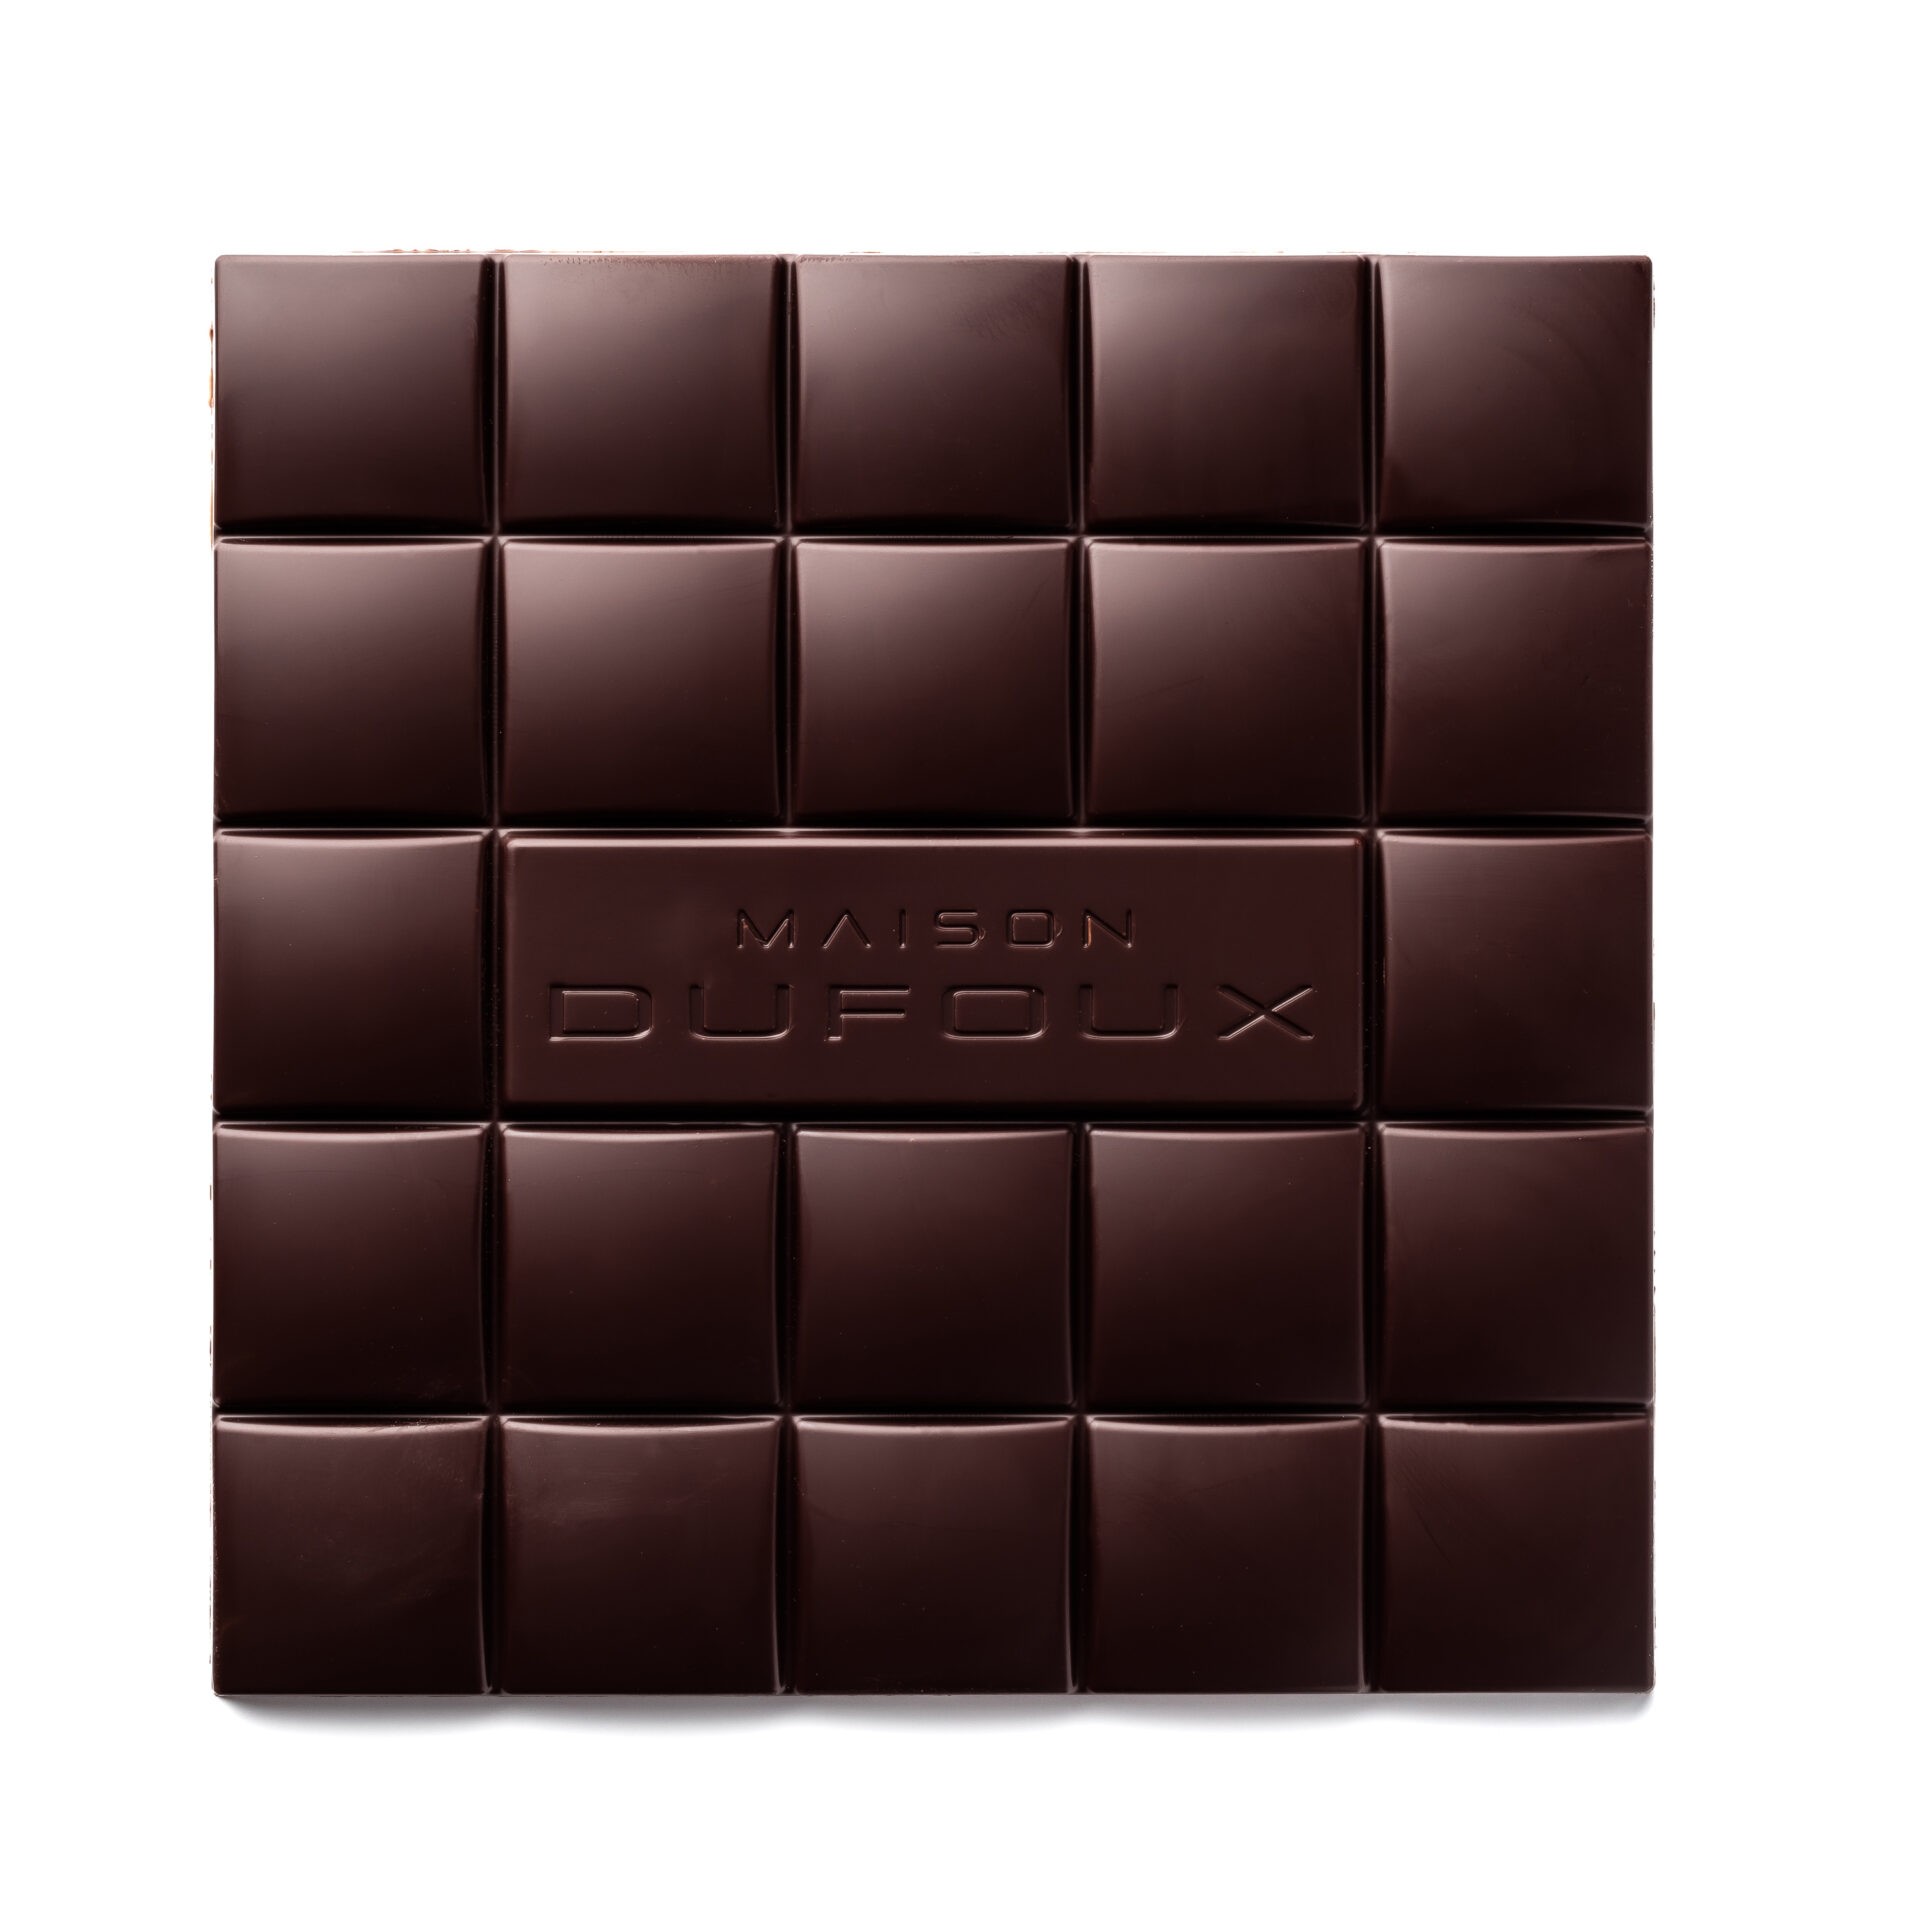 Tablette chocolat noir - 80 % SIGNATURE INTENSE